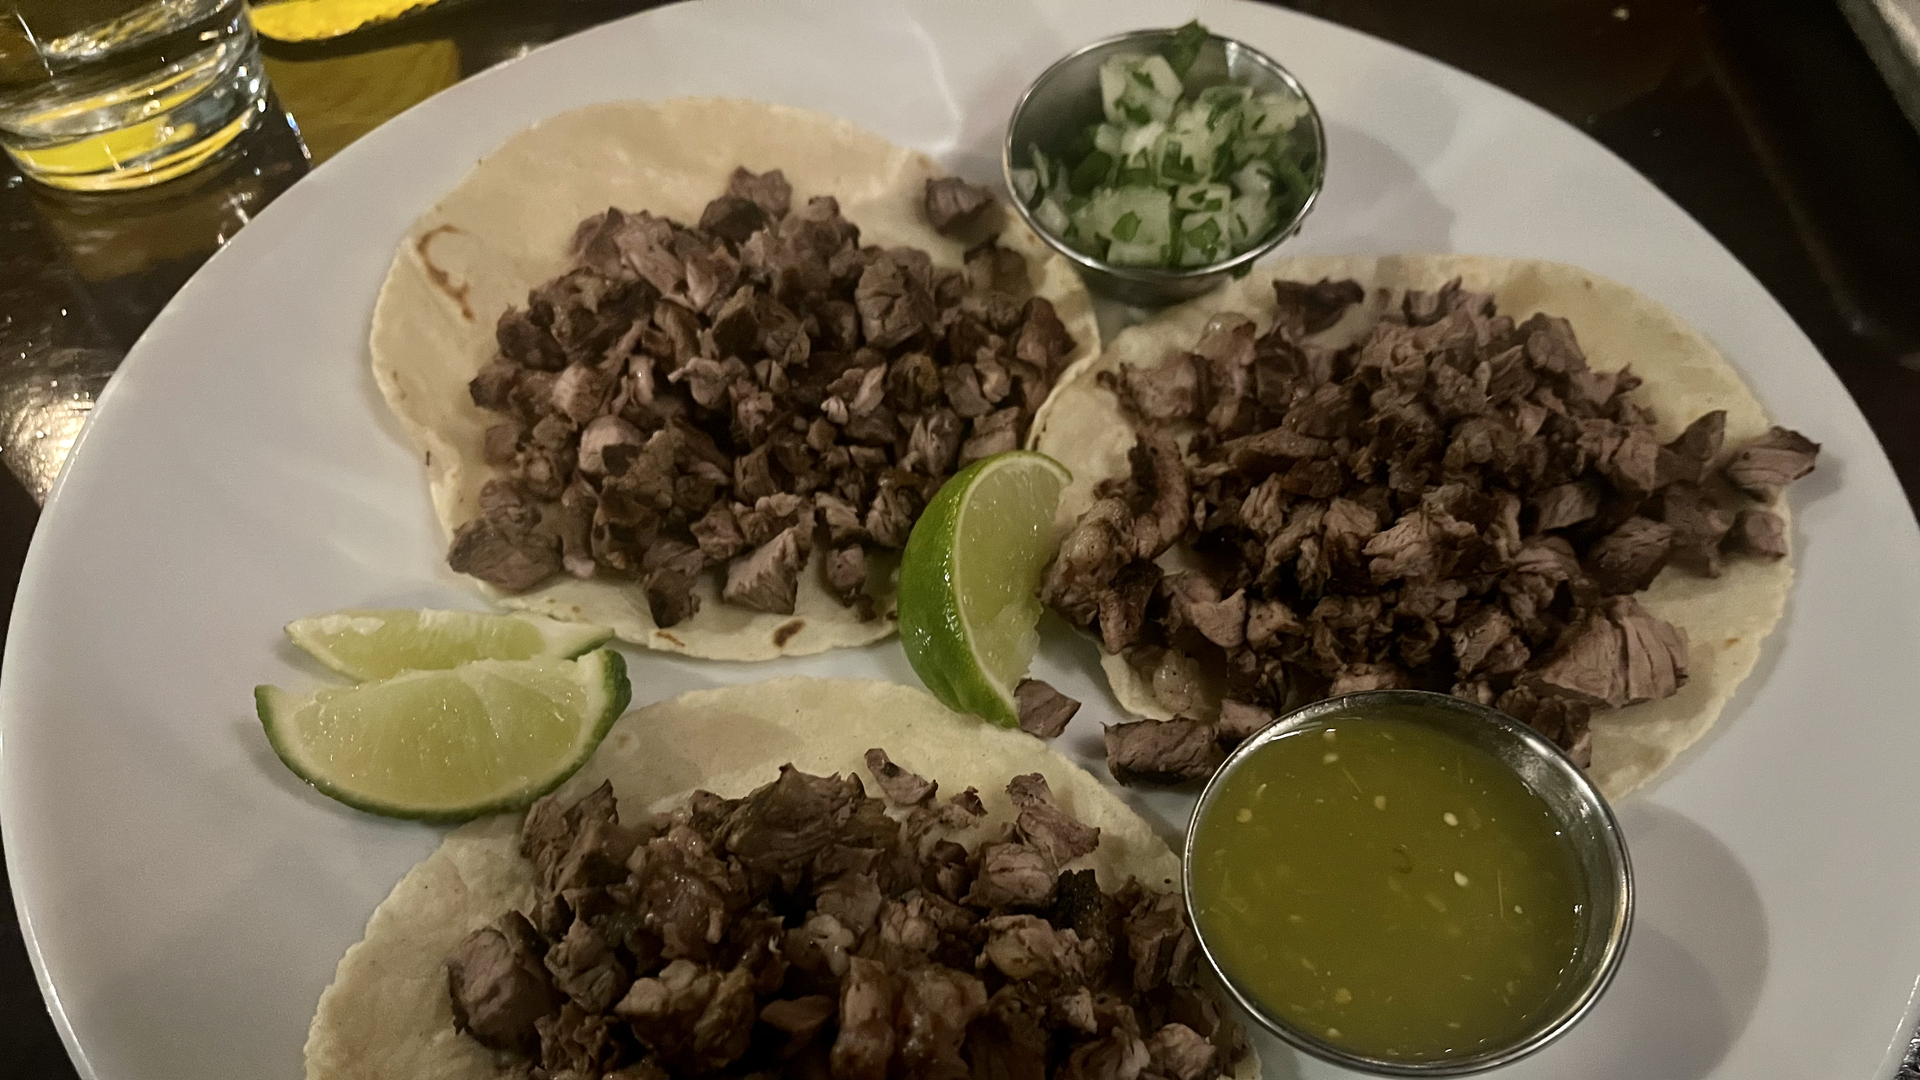 Three asada tacos.